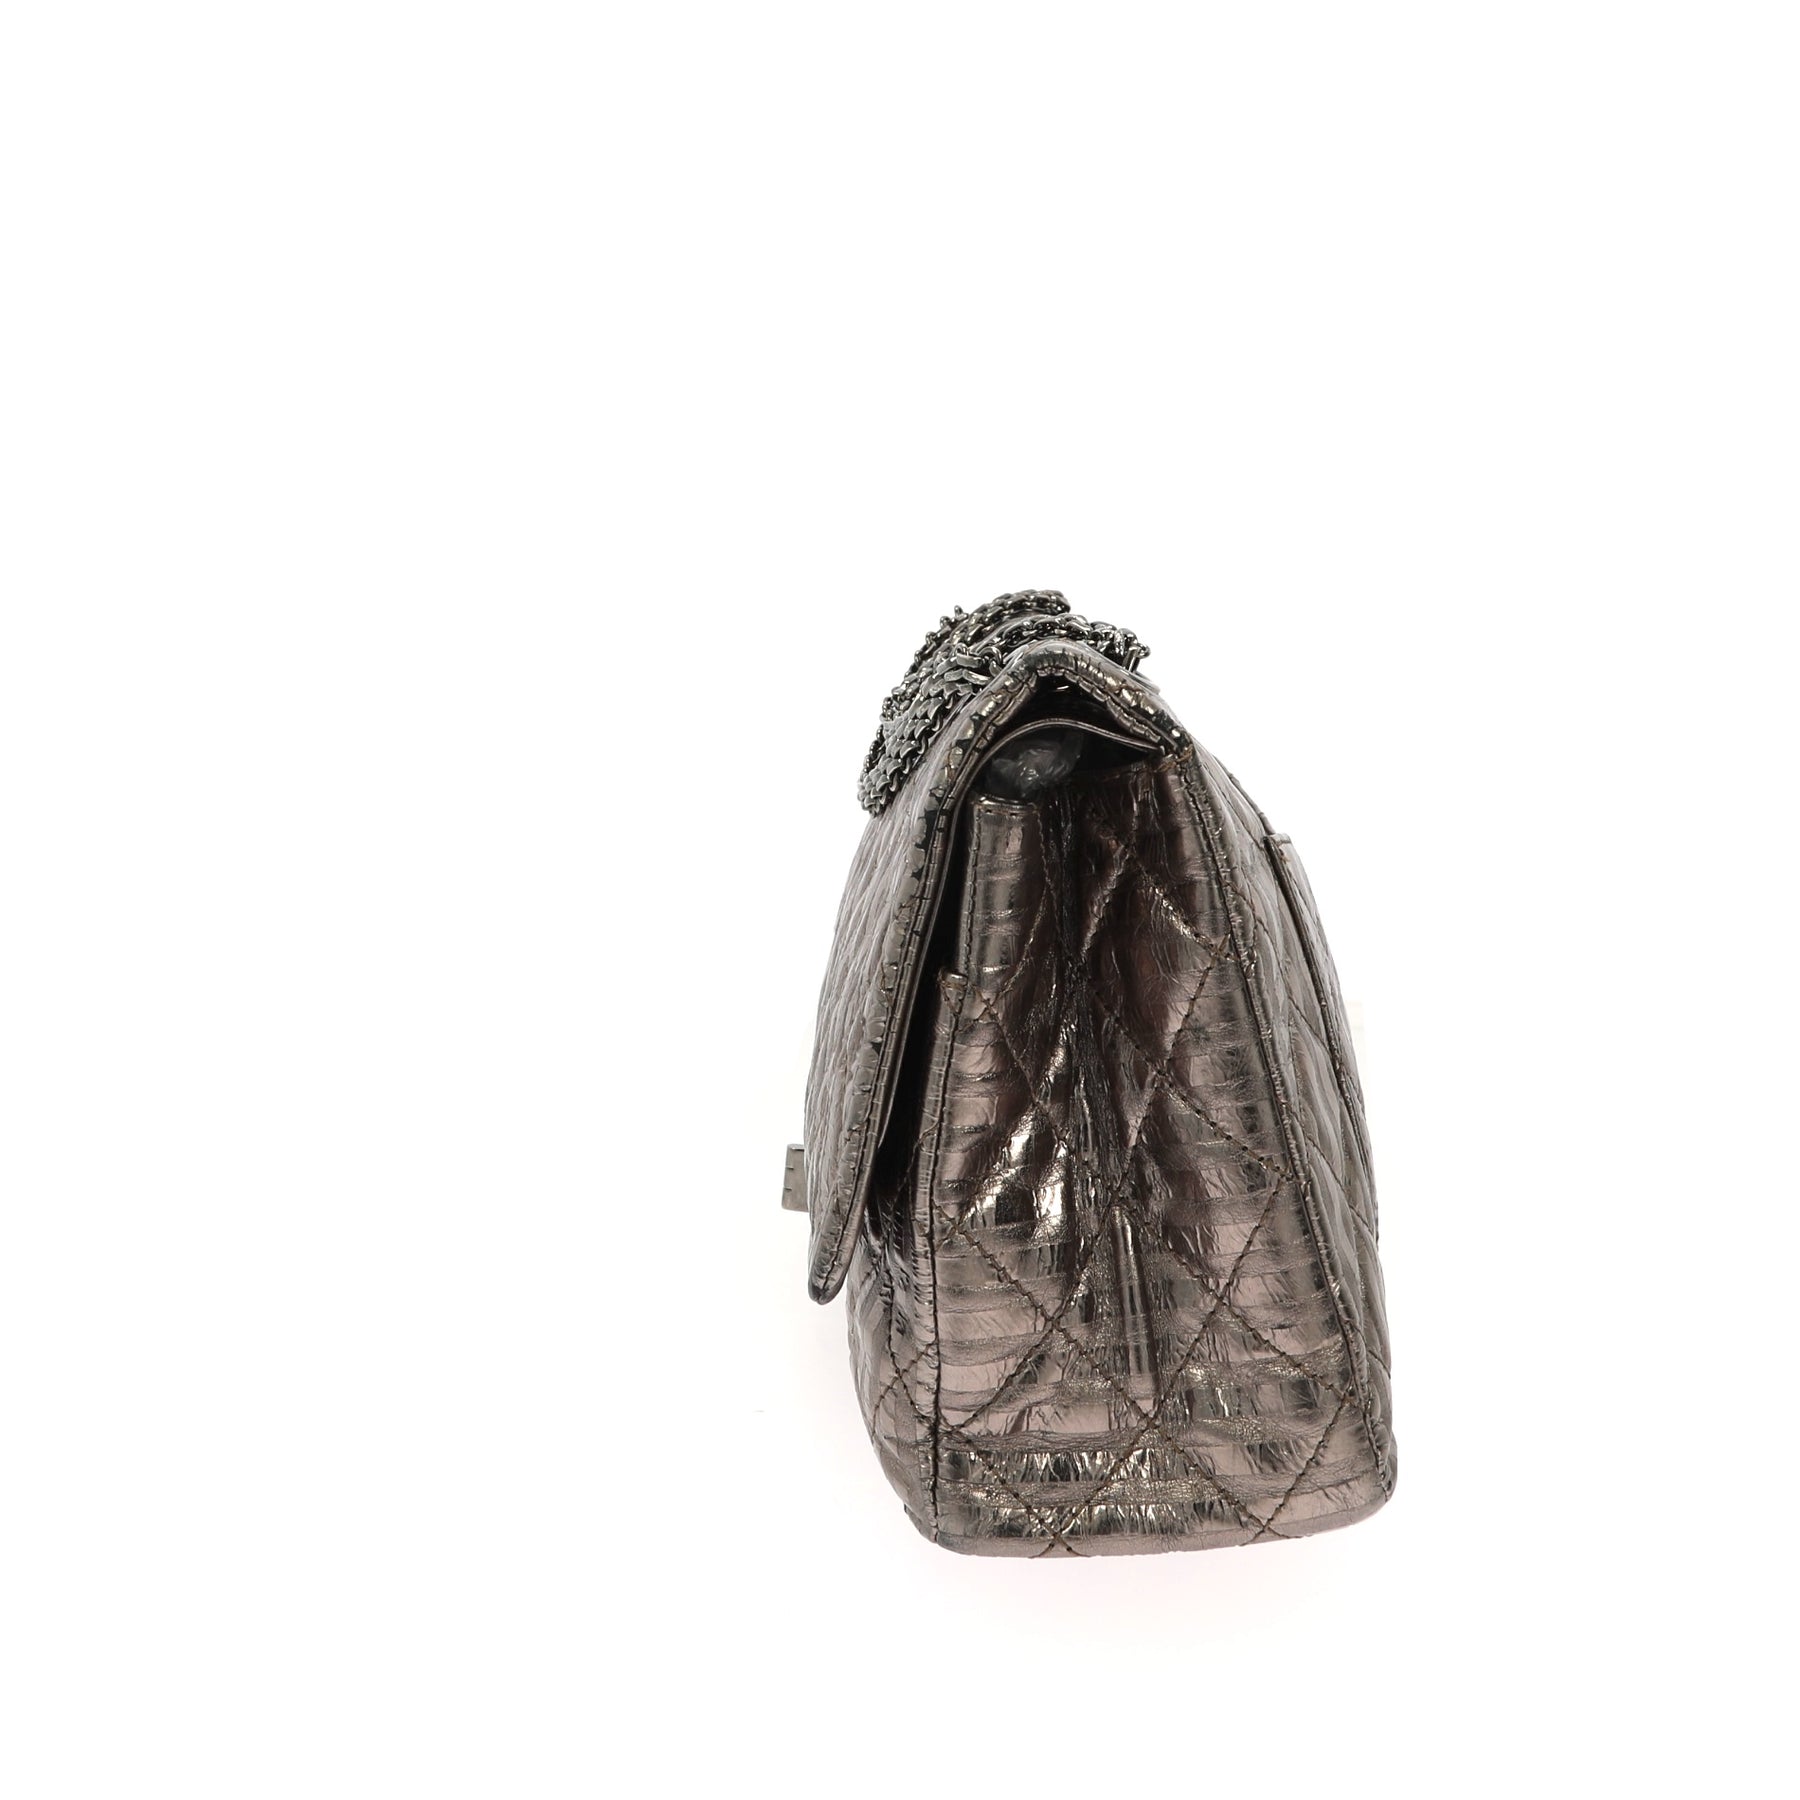 Chanel Clear 2.55 Reissue Transparent Classic Single Flap Shoulder Bag